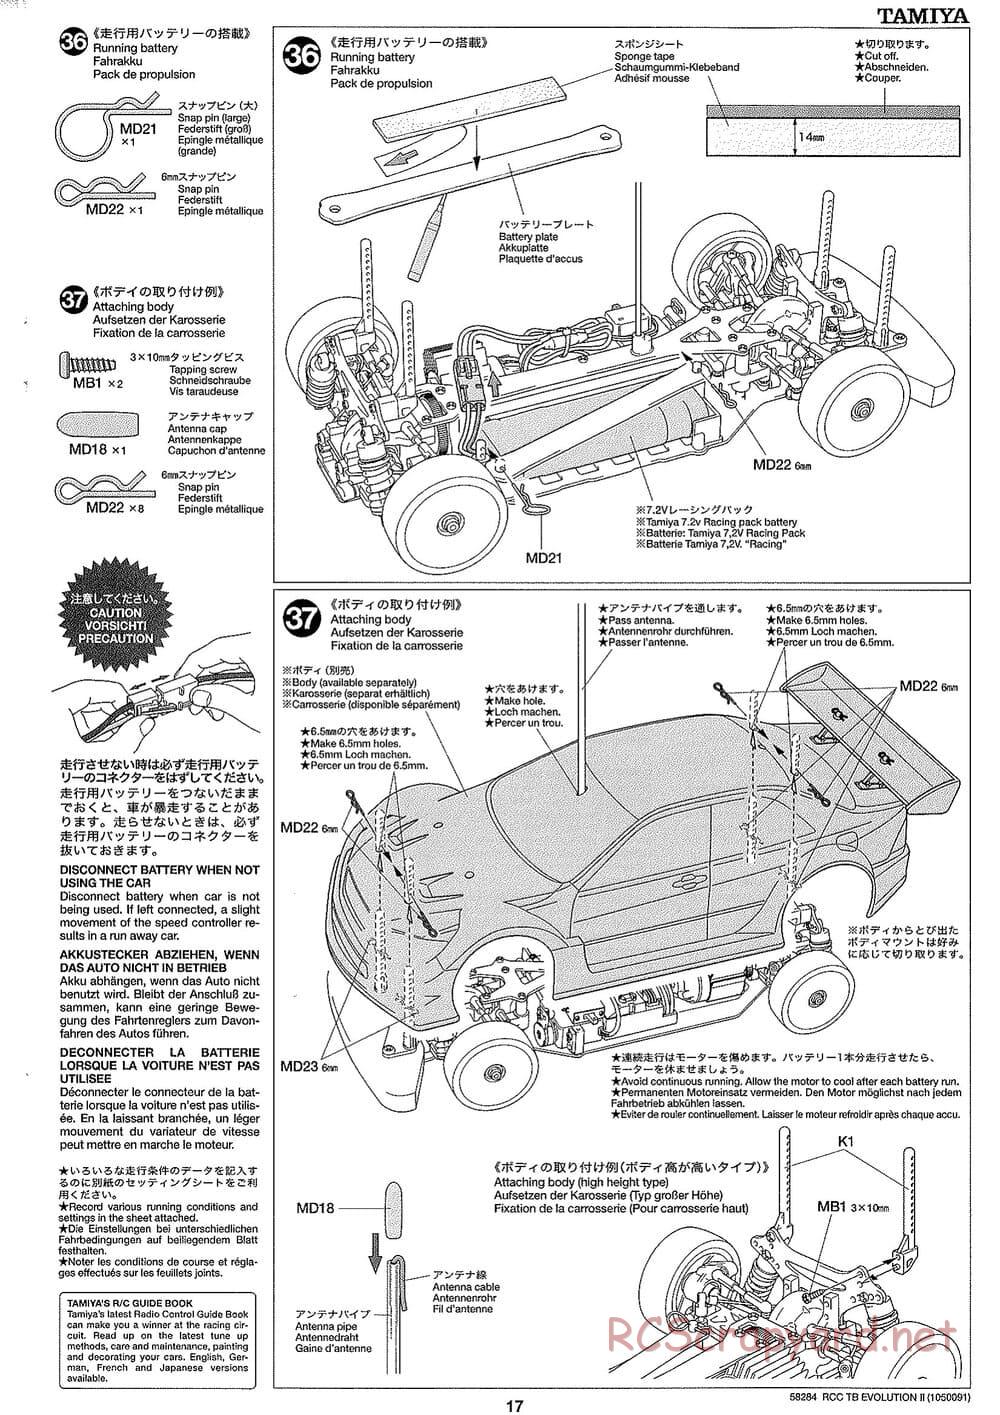 Tamiya - TB Evolution II Chassis - Manual - Page 17